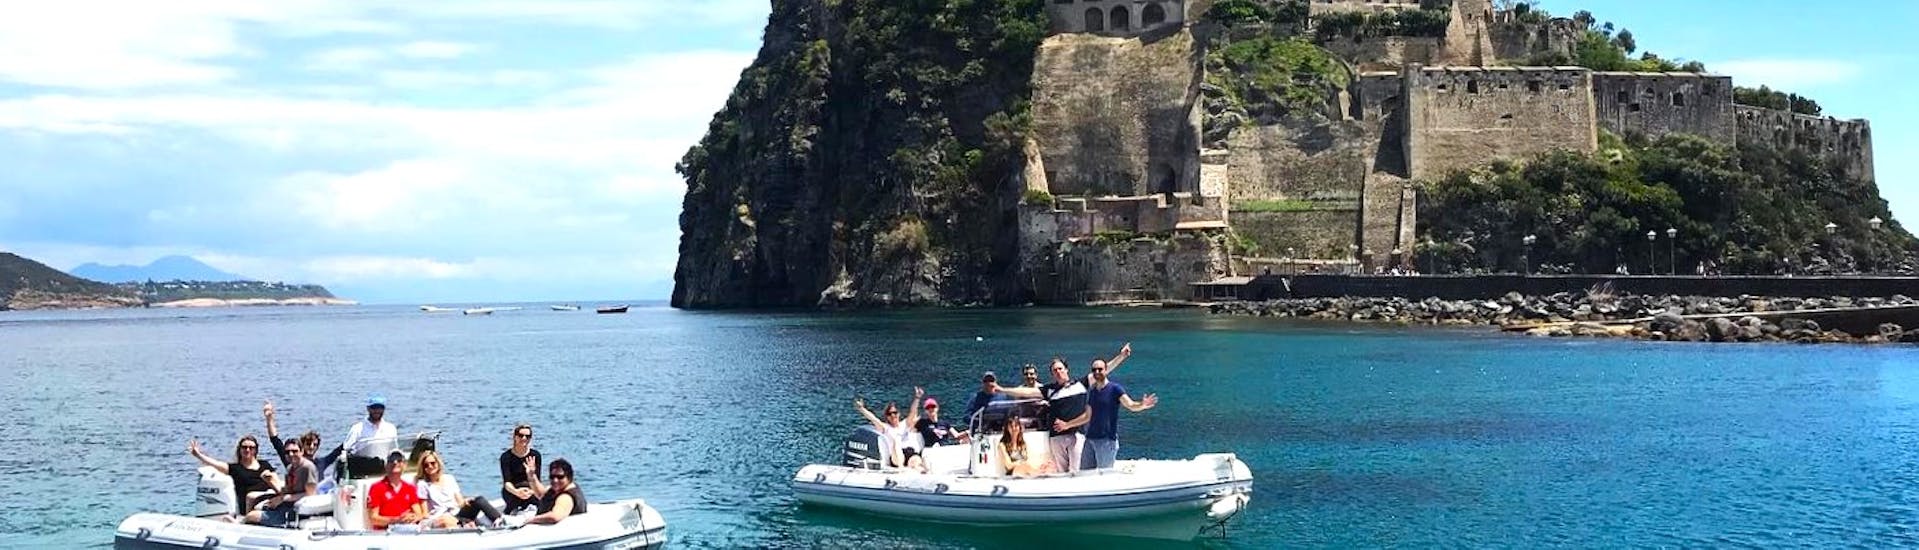 Private RIB-Bootstour nach Ischia und Procida mit Aperitif und Schnorcheln.